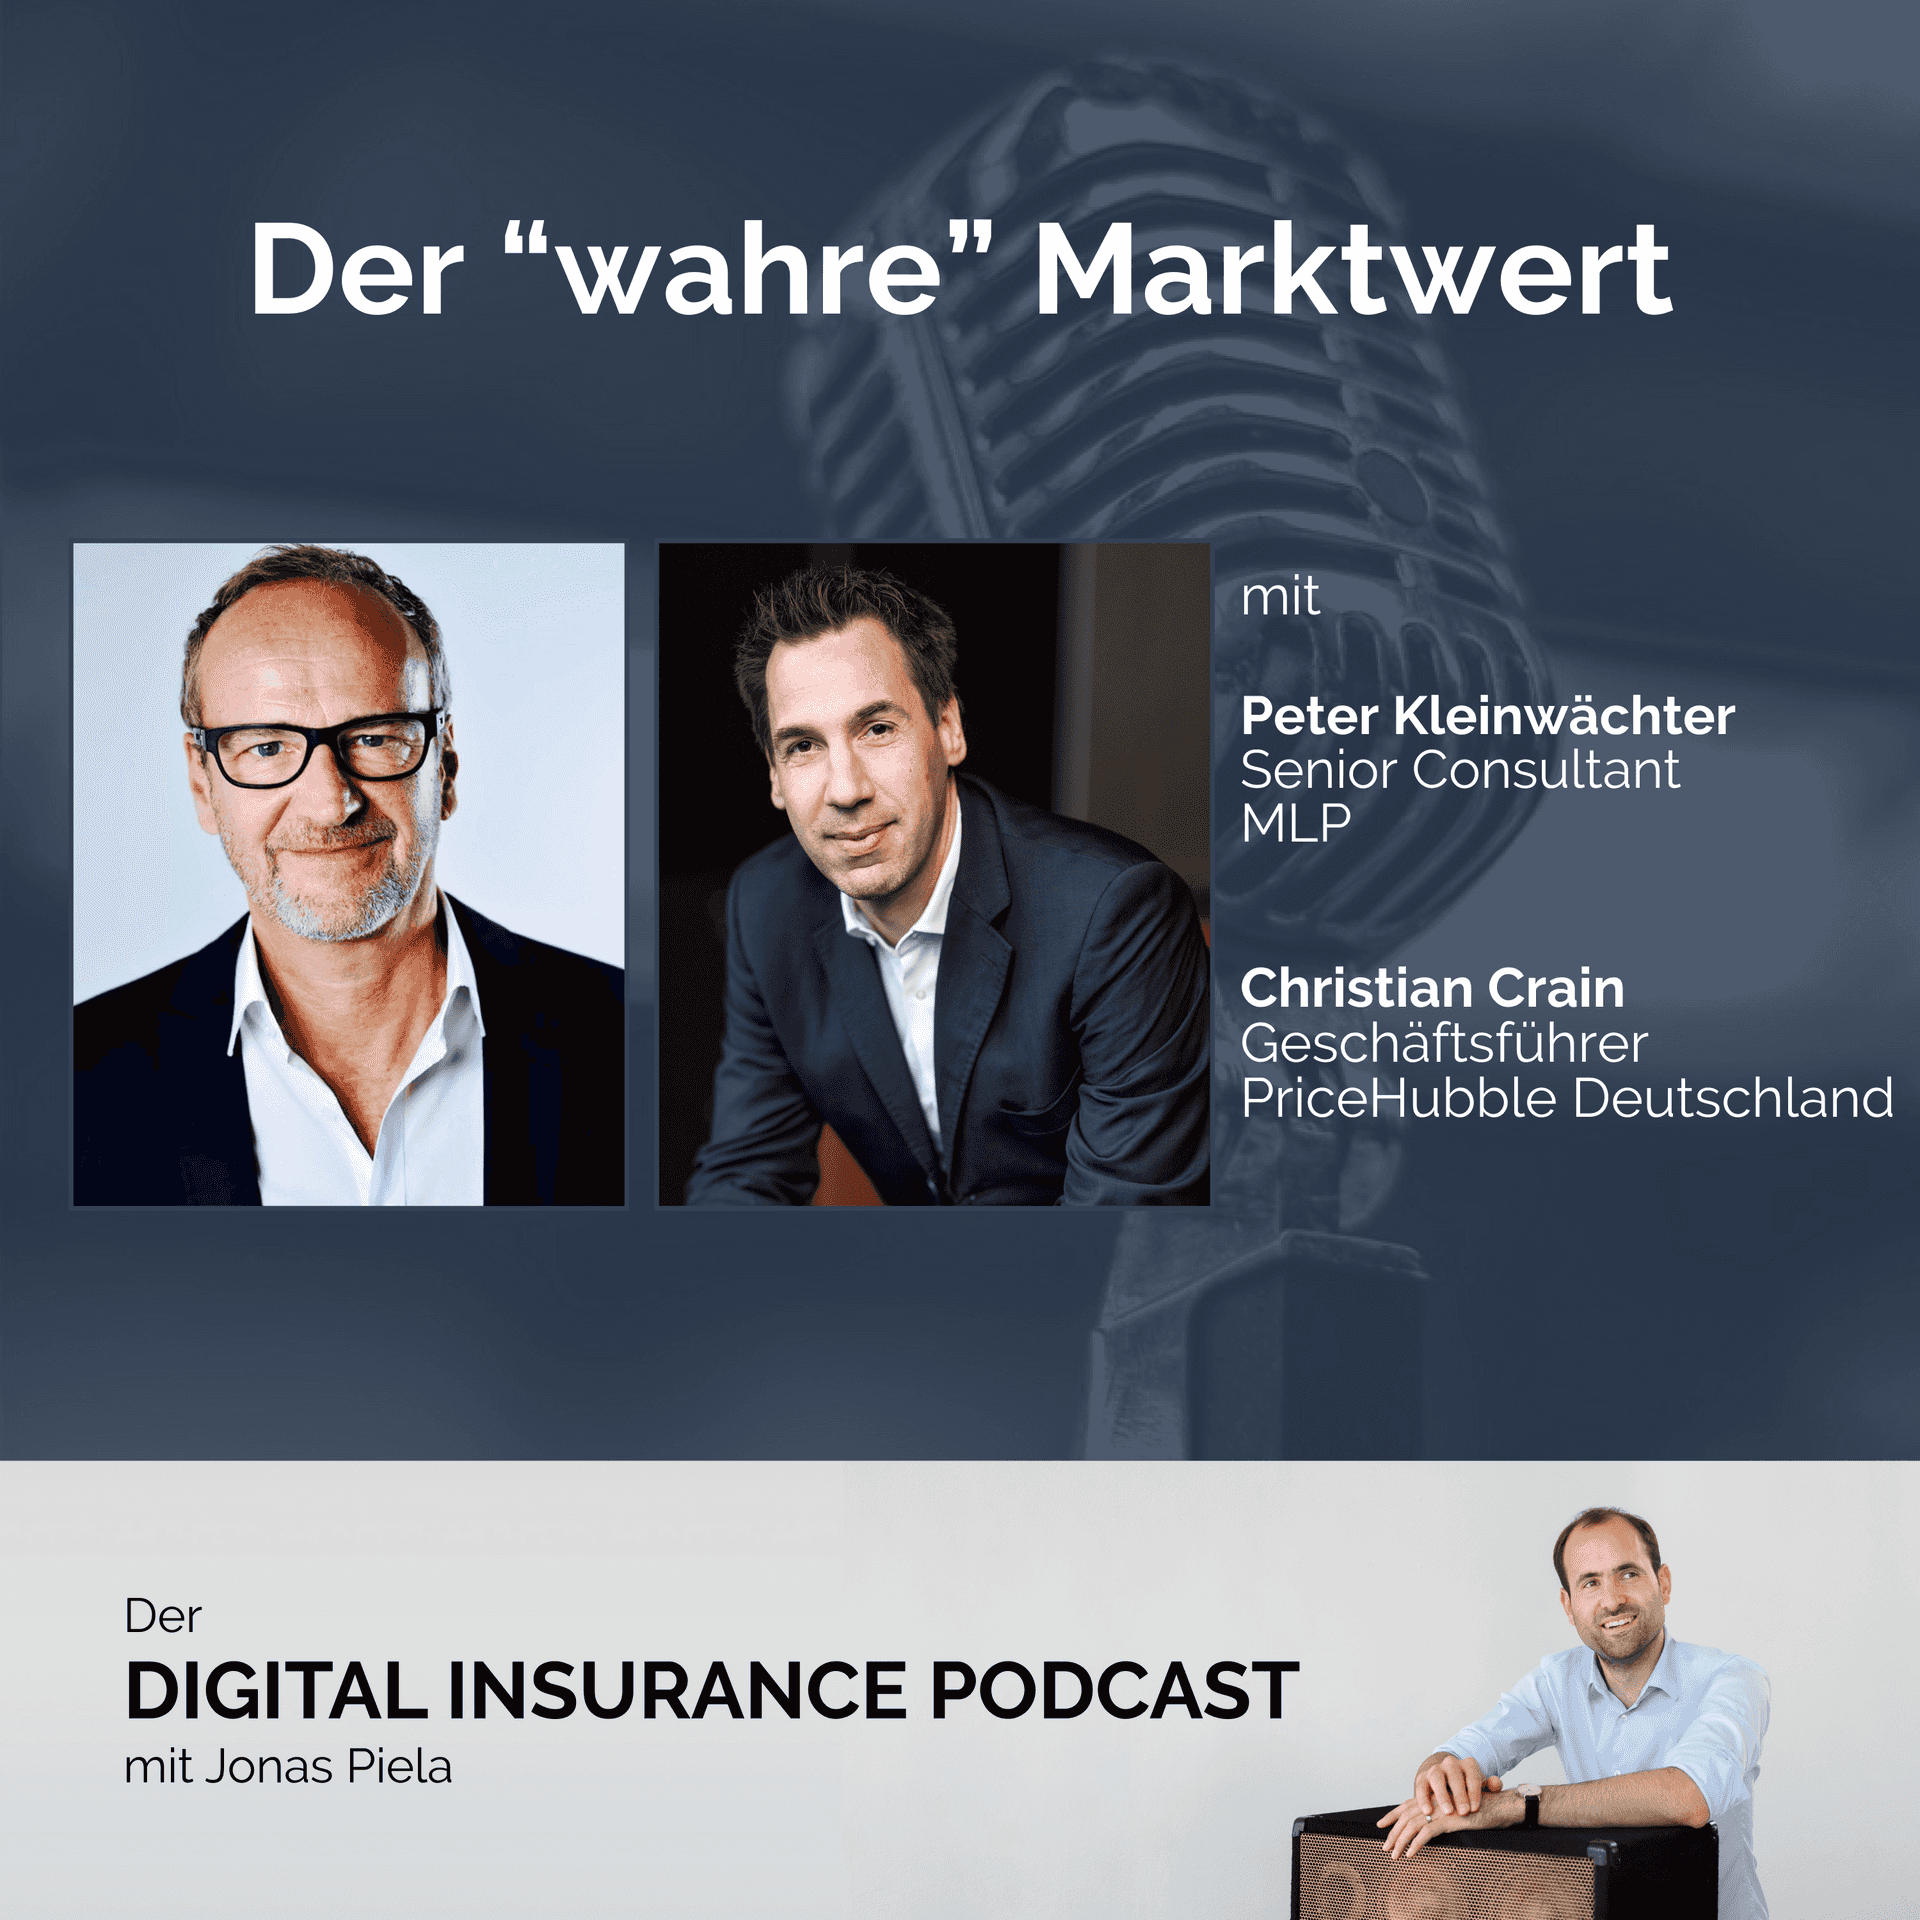 Der "wahre" Marktwert mit Peter Kleinwächter und Christian Crain